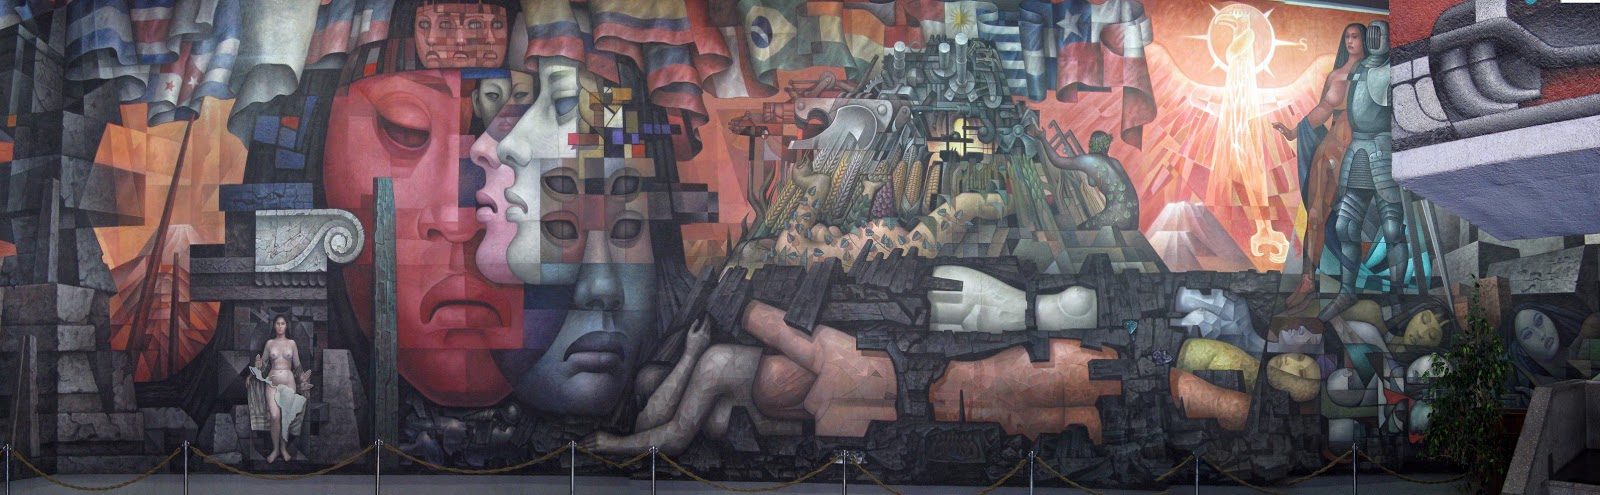 Mural Casa del Arte - Gran Concepción